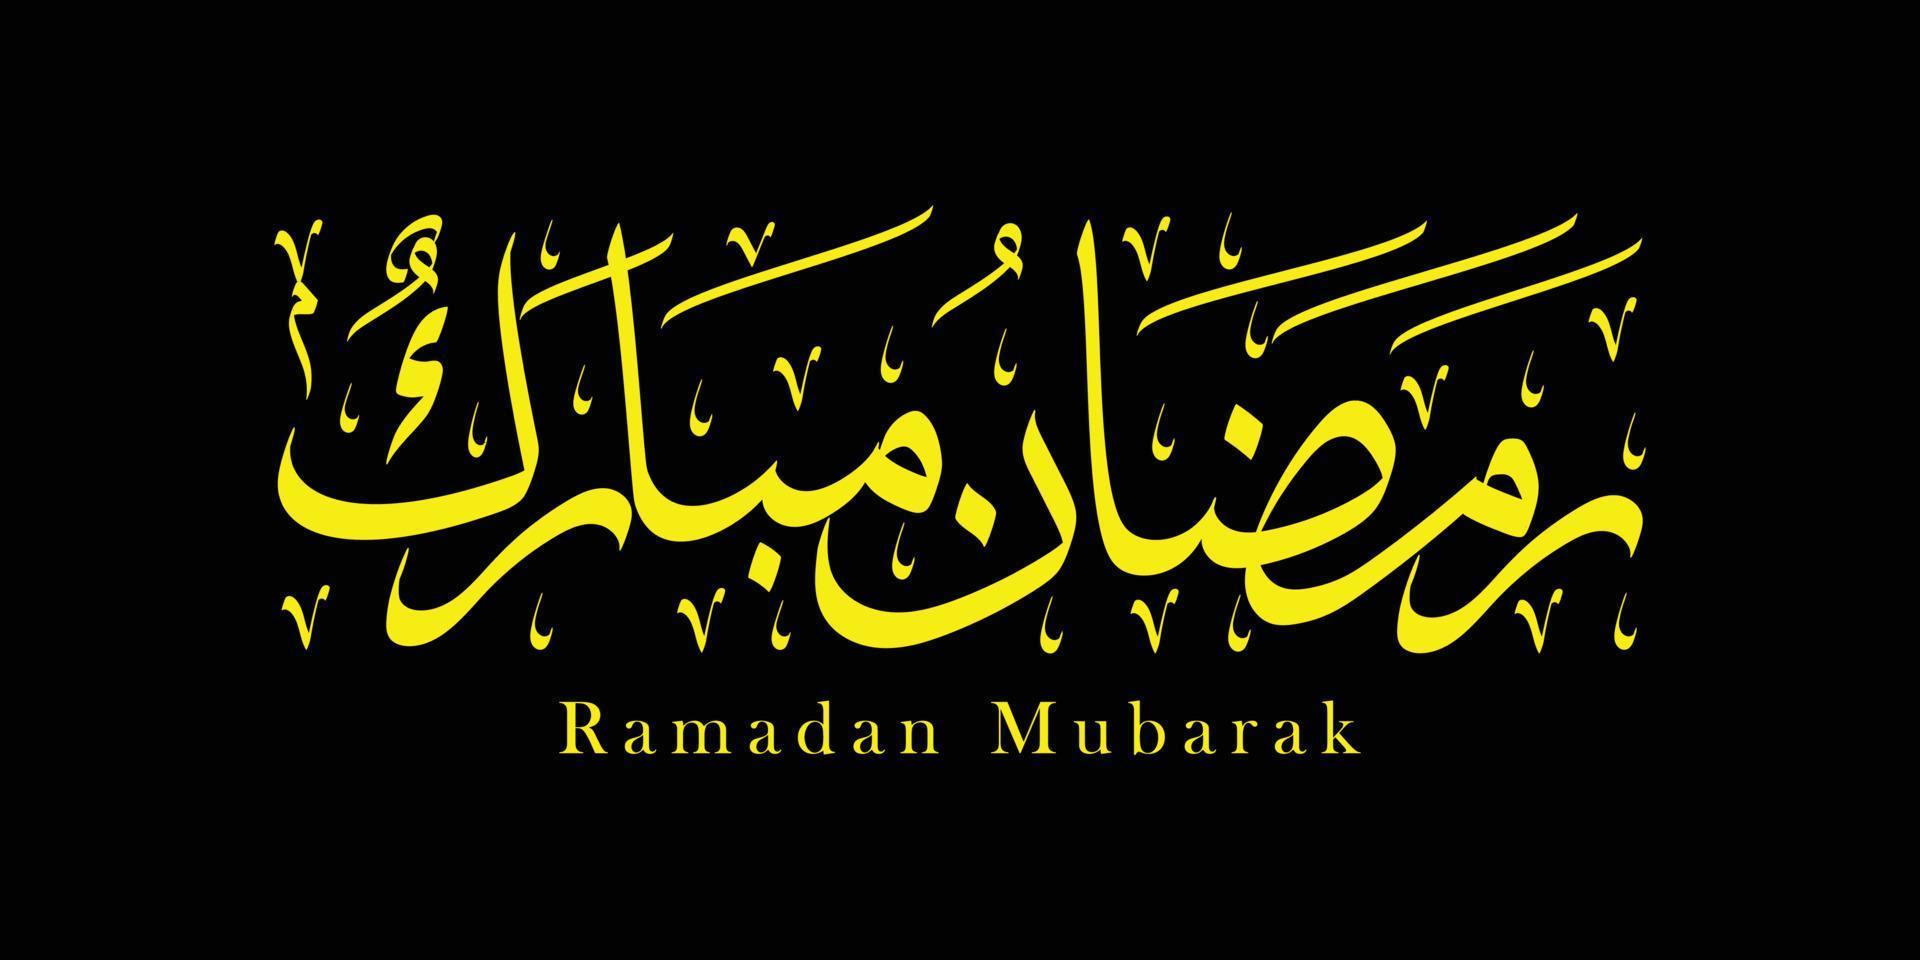 Ramadan Mubarak Arabisch Kalligraphie im Gelb Farbe und schwarz Hintergrund vektor